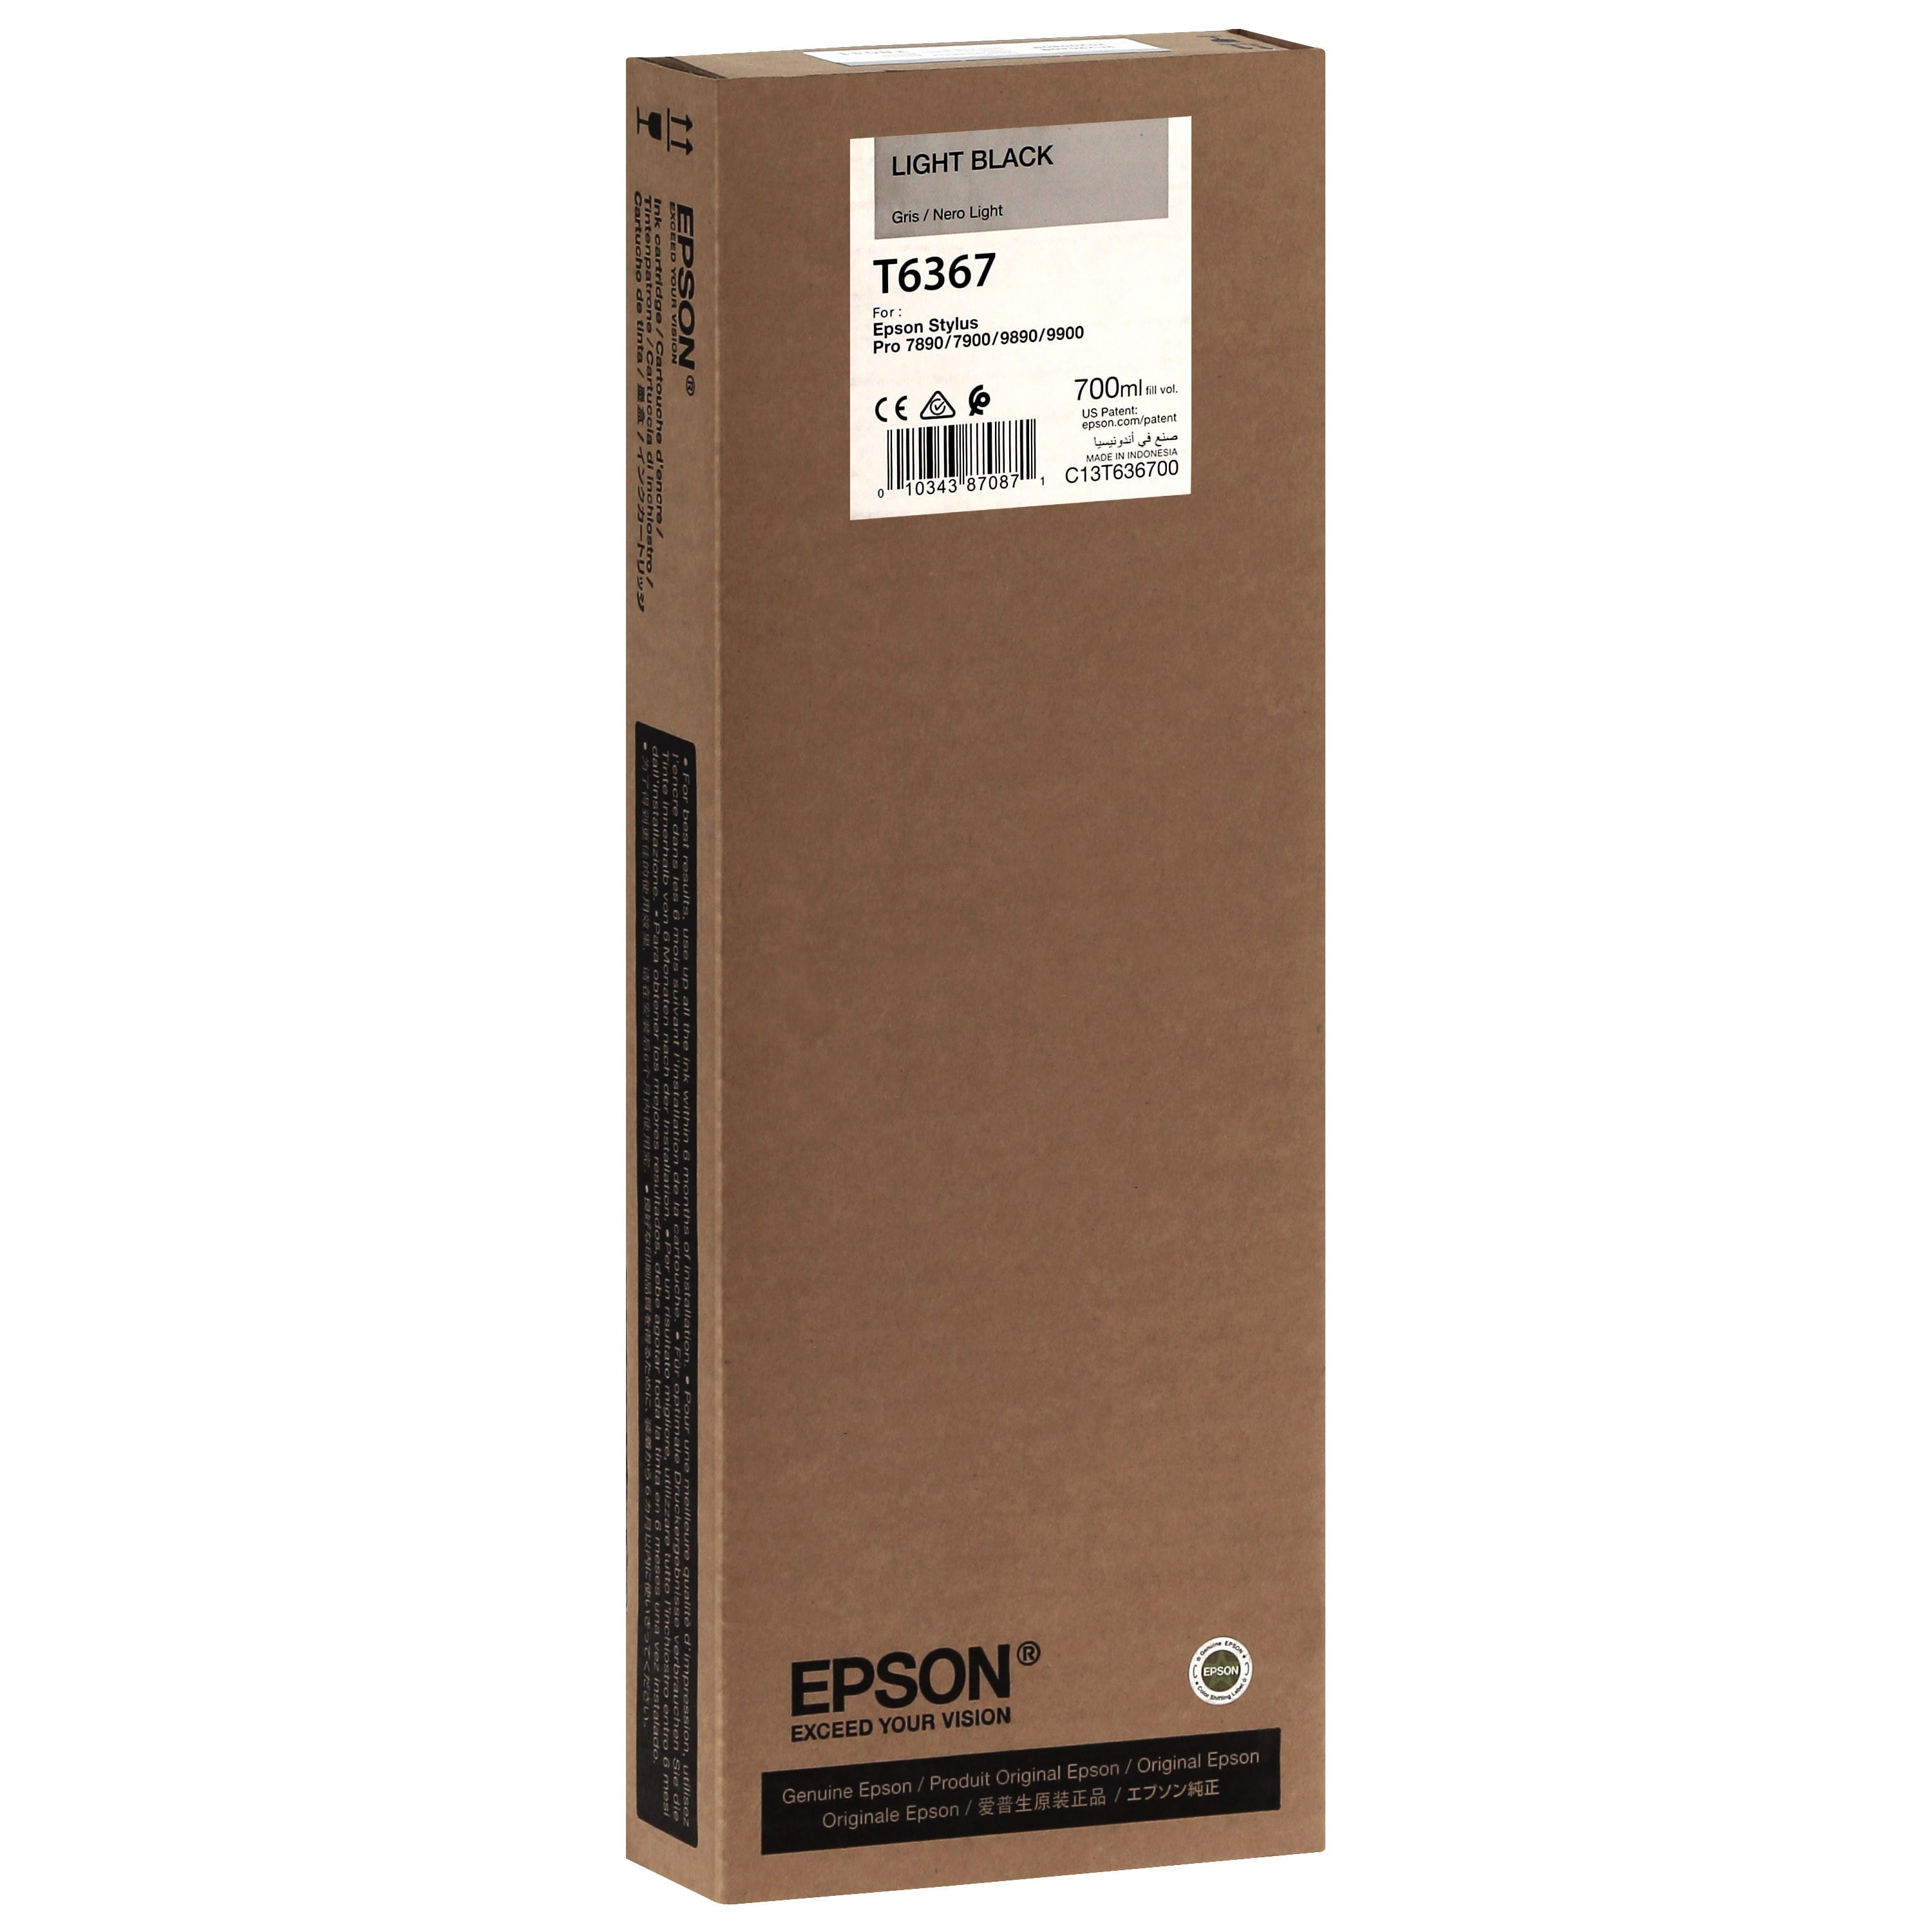 EPSON - Cartouche d'encre traceur T6367 Pour imprimante 7890/9890/7900/9900 Gris - 700ml